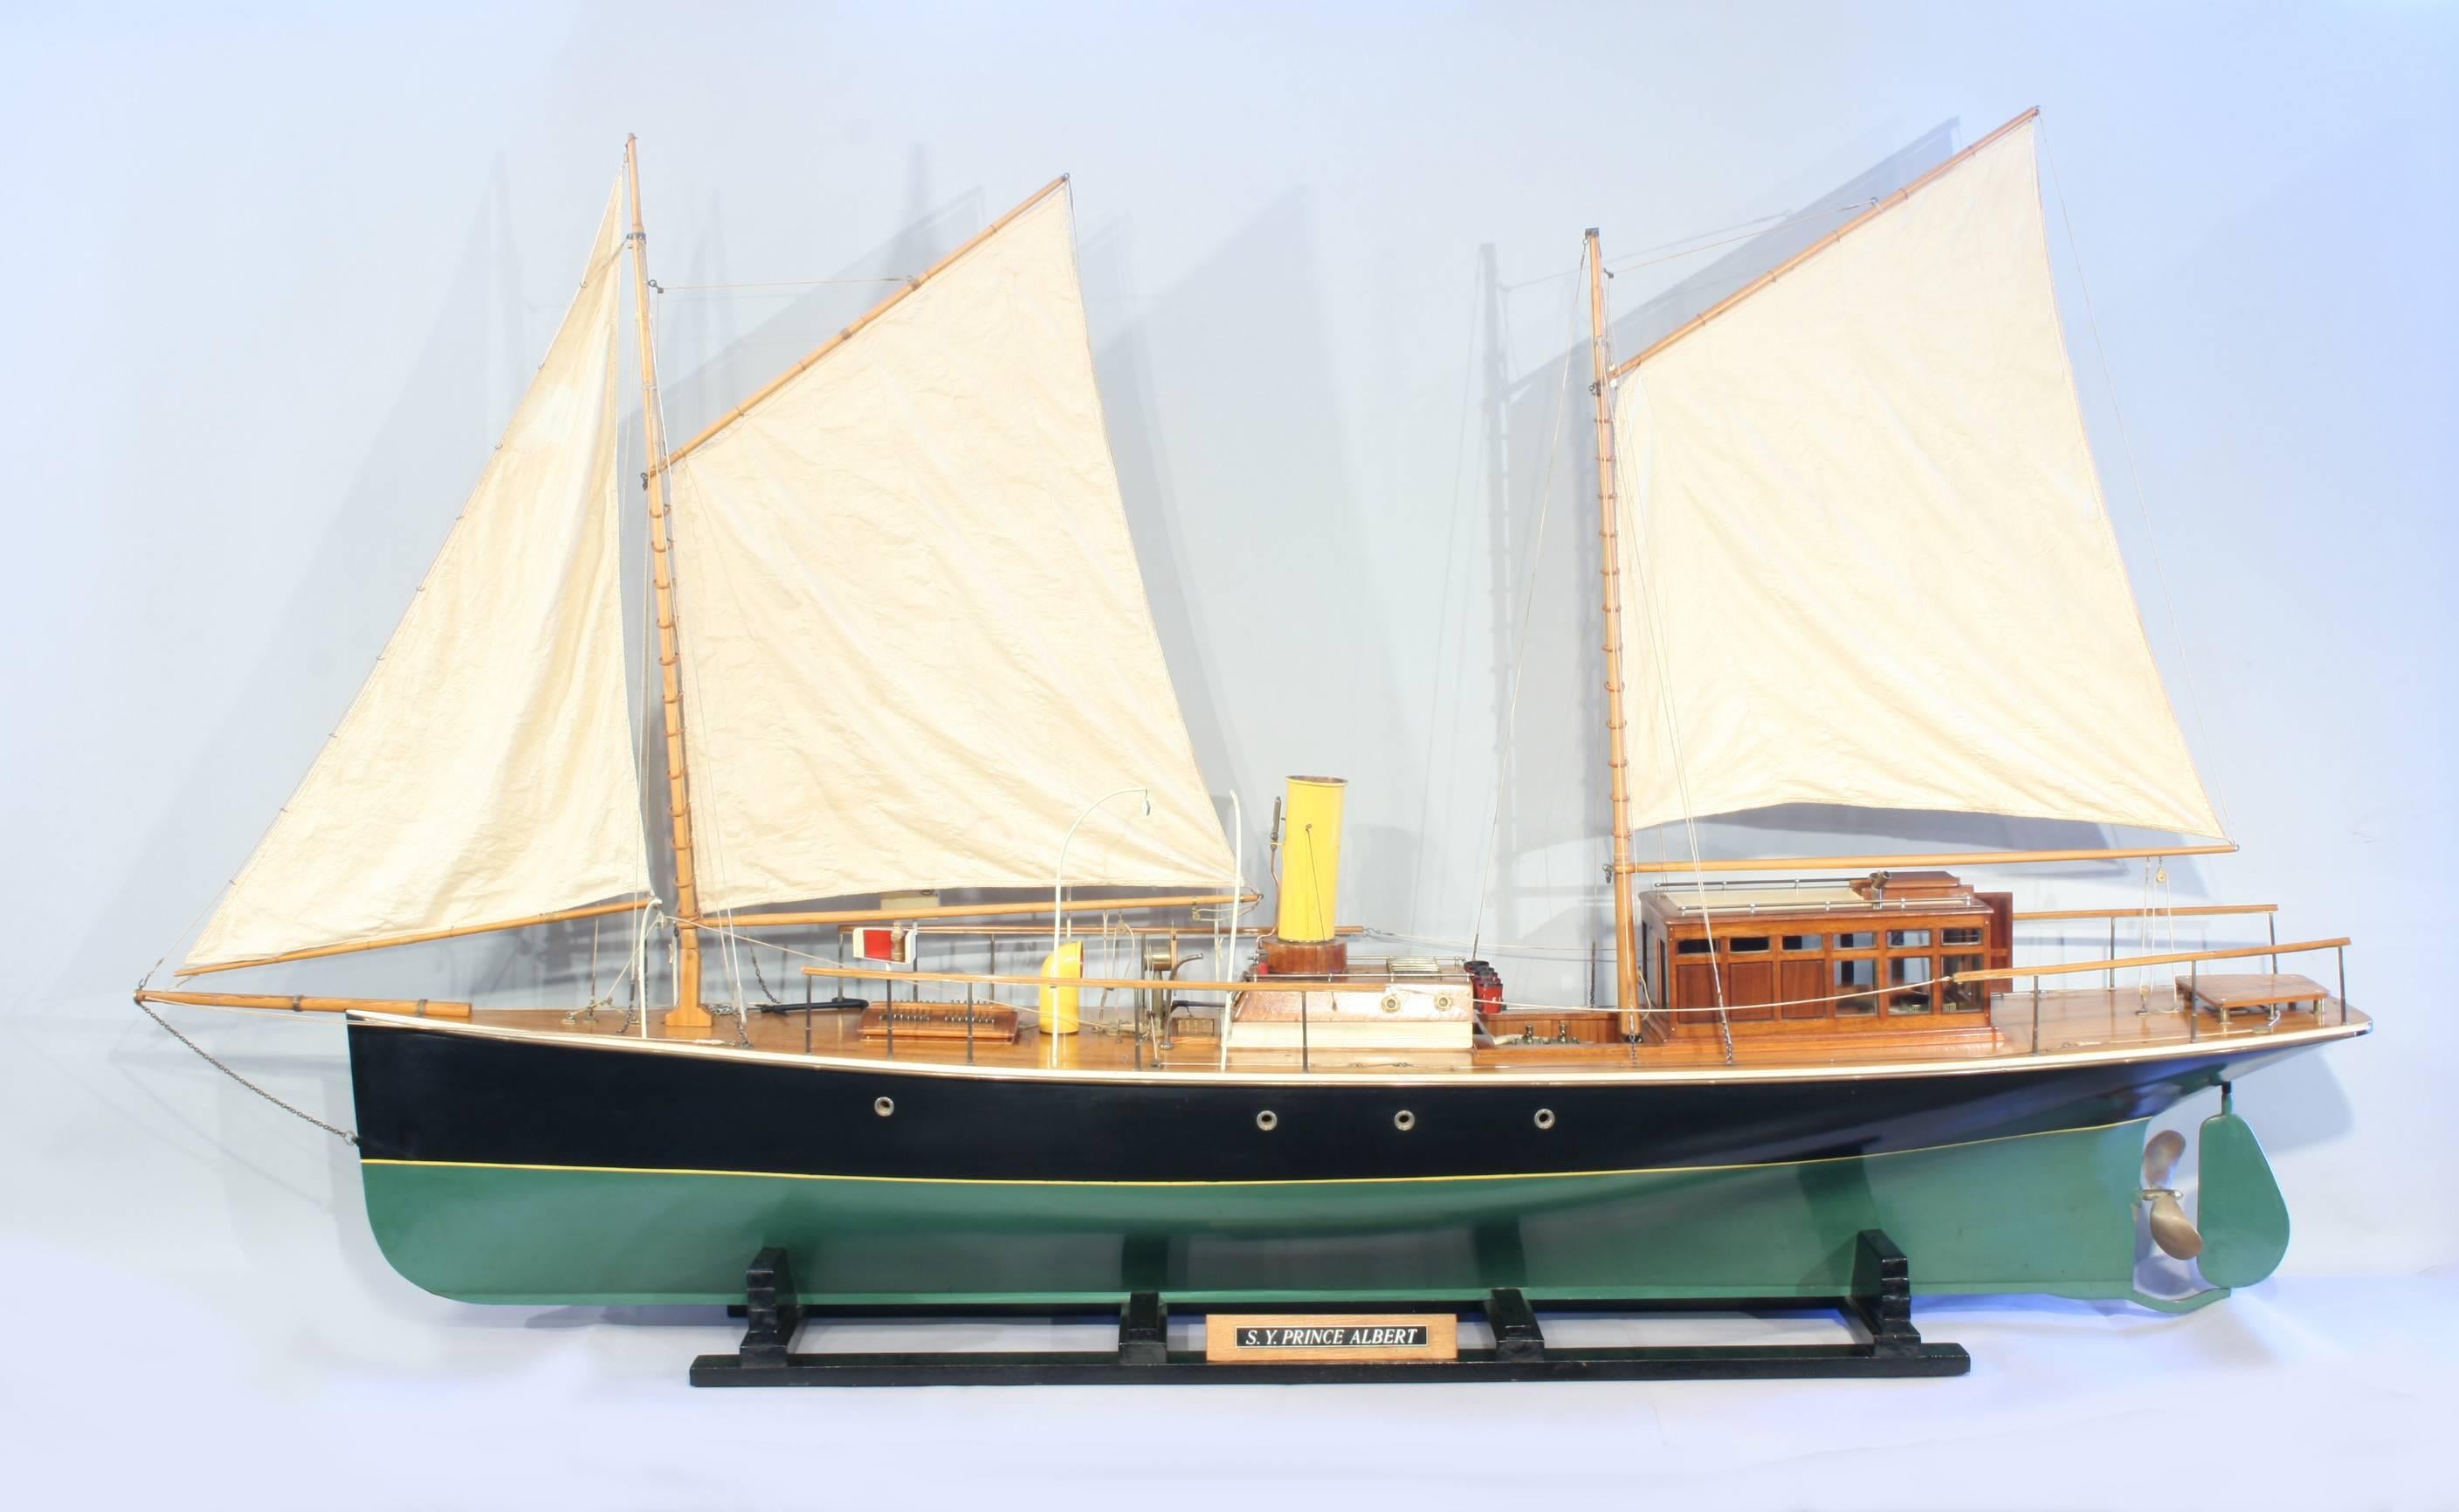 Probablement un modèle de constructeur de bateaux de S.Y. Yacht à vapeur Prince Albert.
Une maquette exceptionnelle, de qualité musée, du yacht à vapeur 